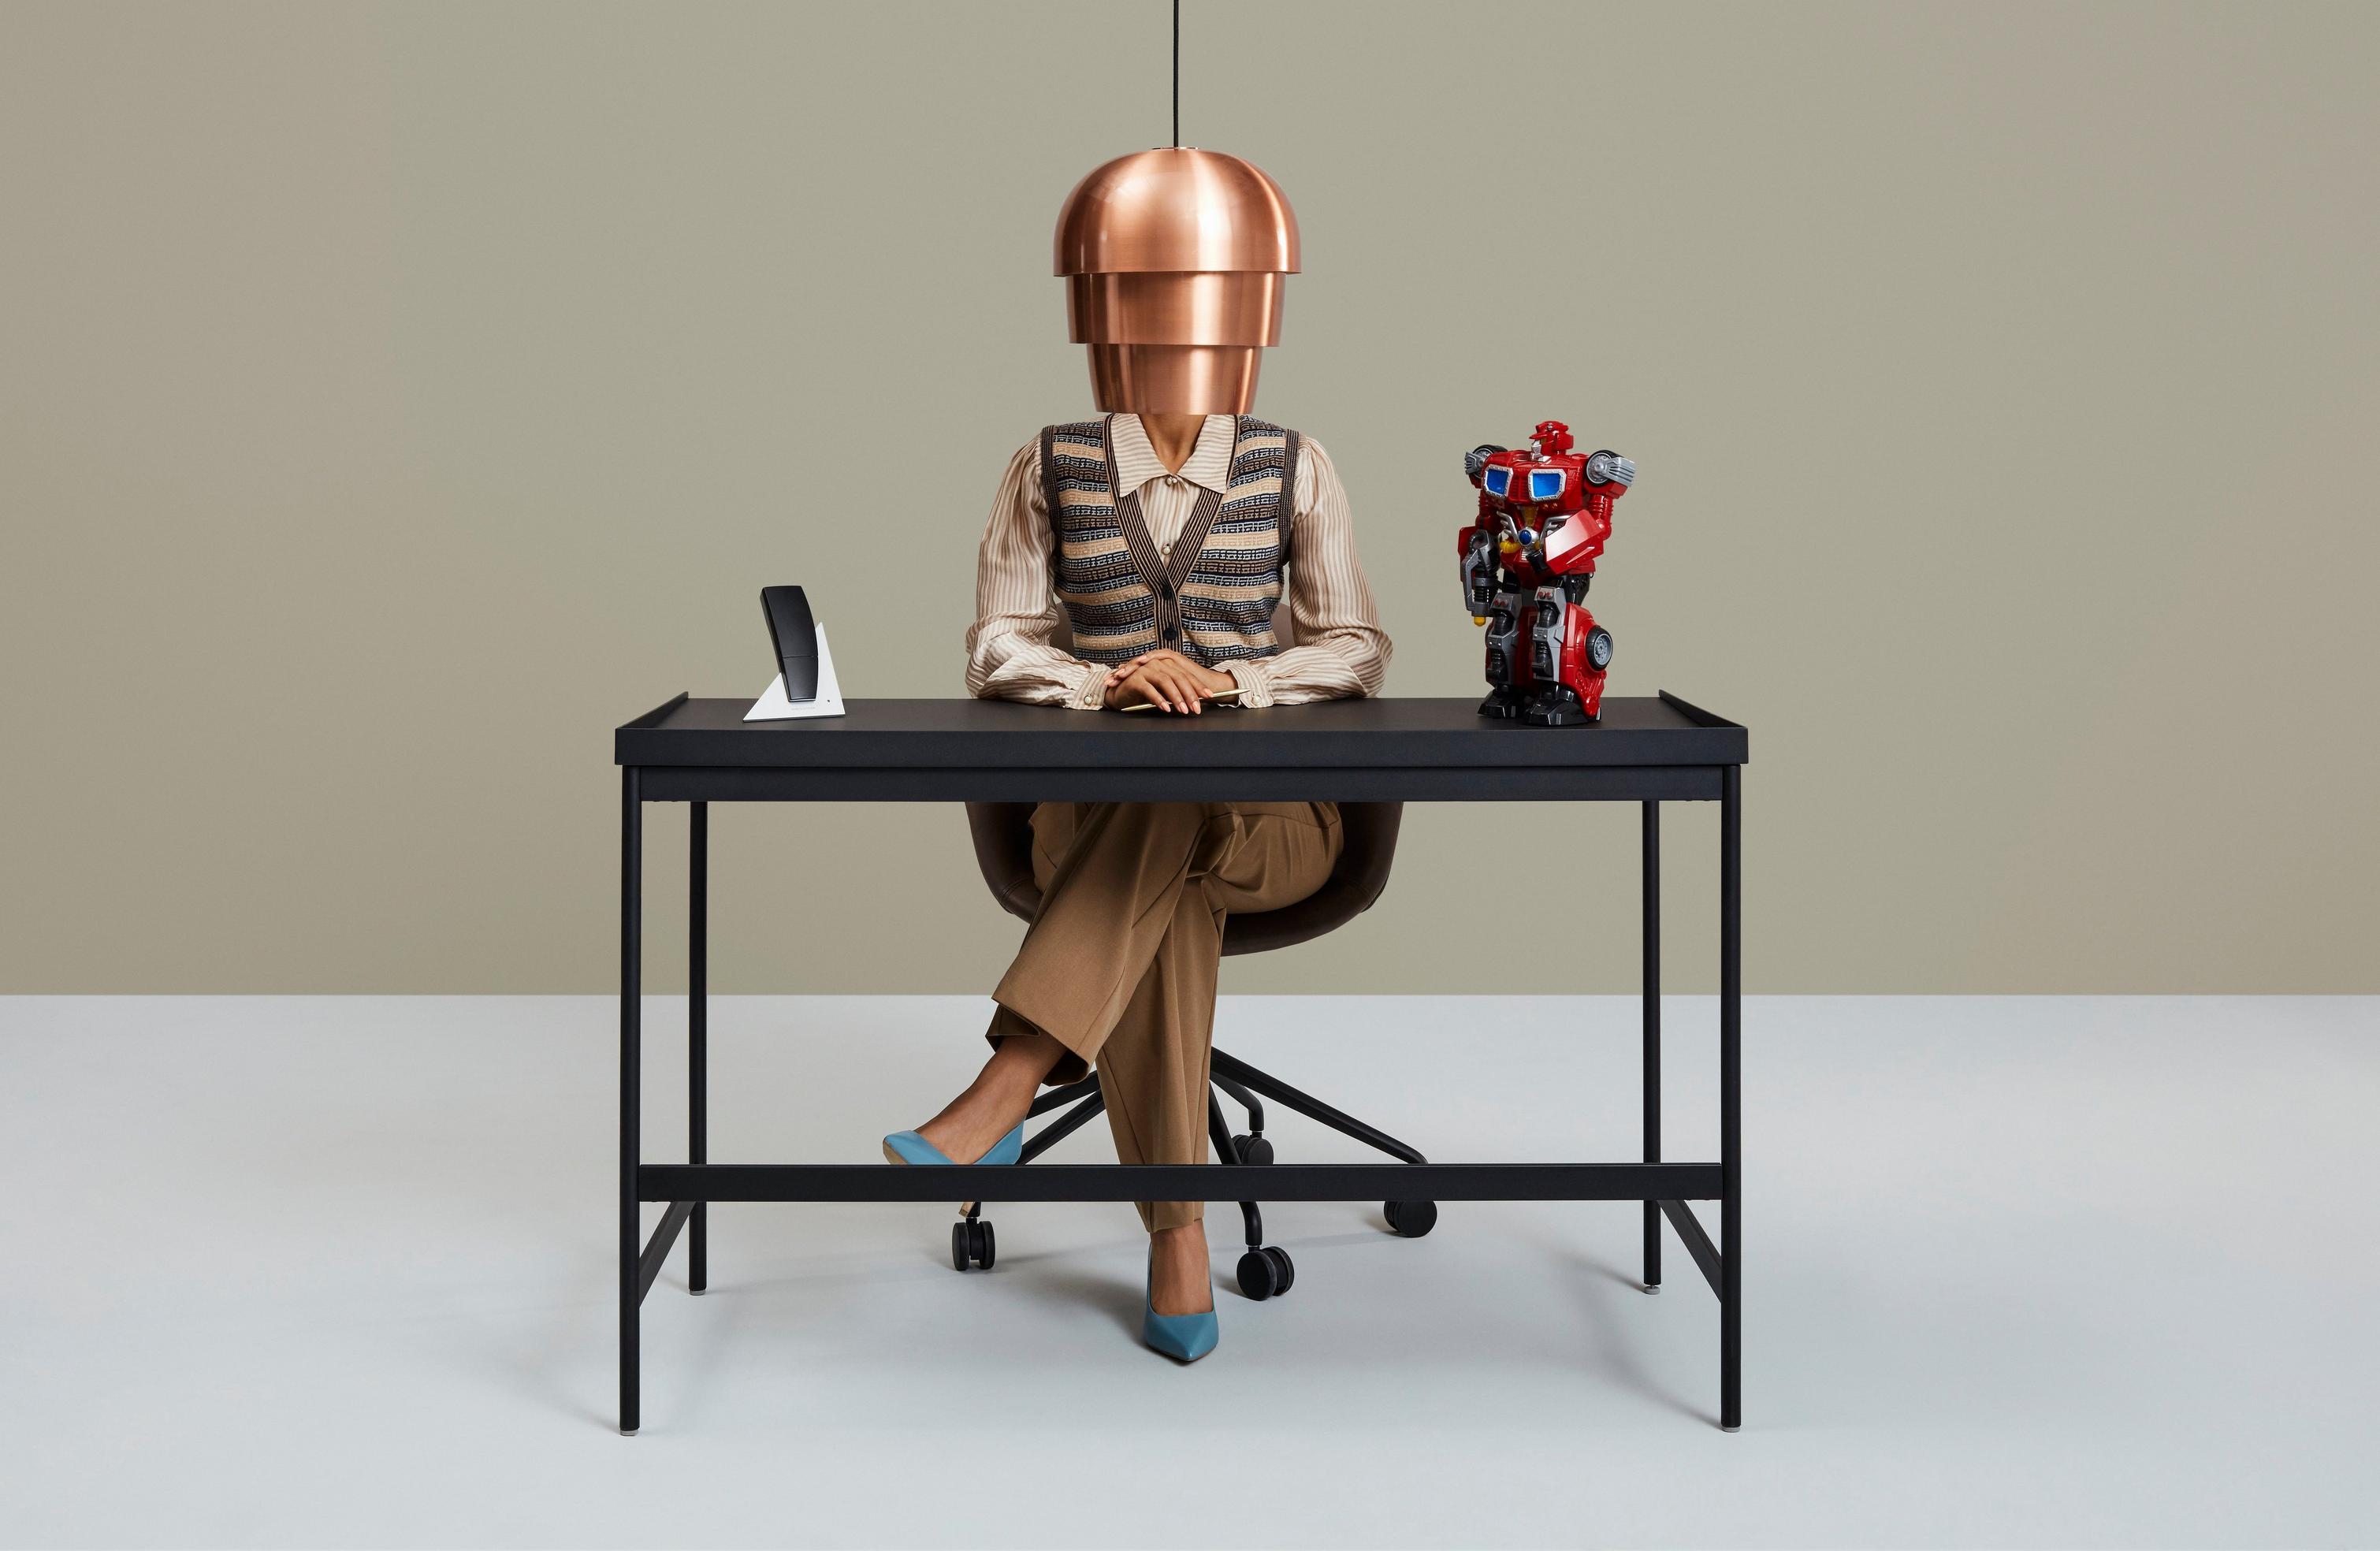 Osoba pri stole s telefónom a farebnou figúrkou robota.